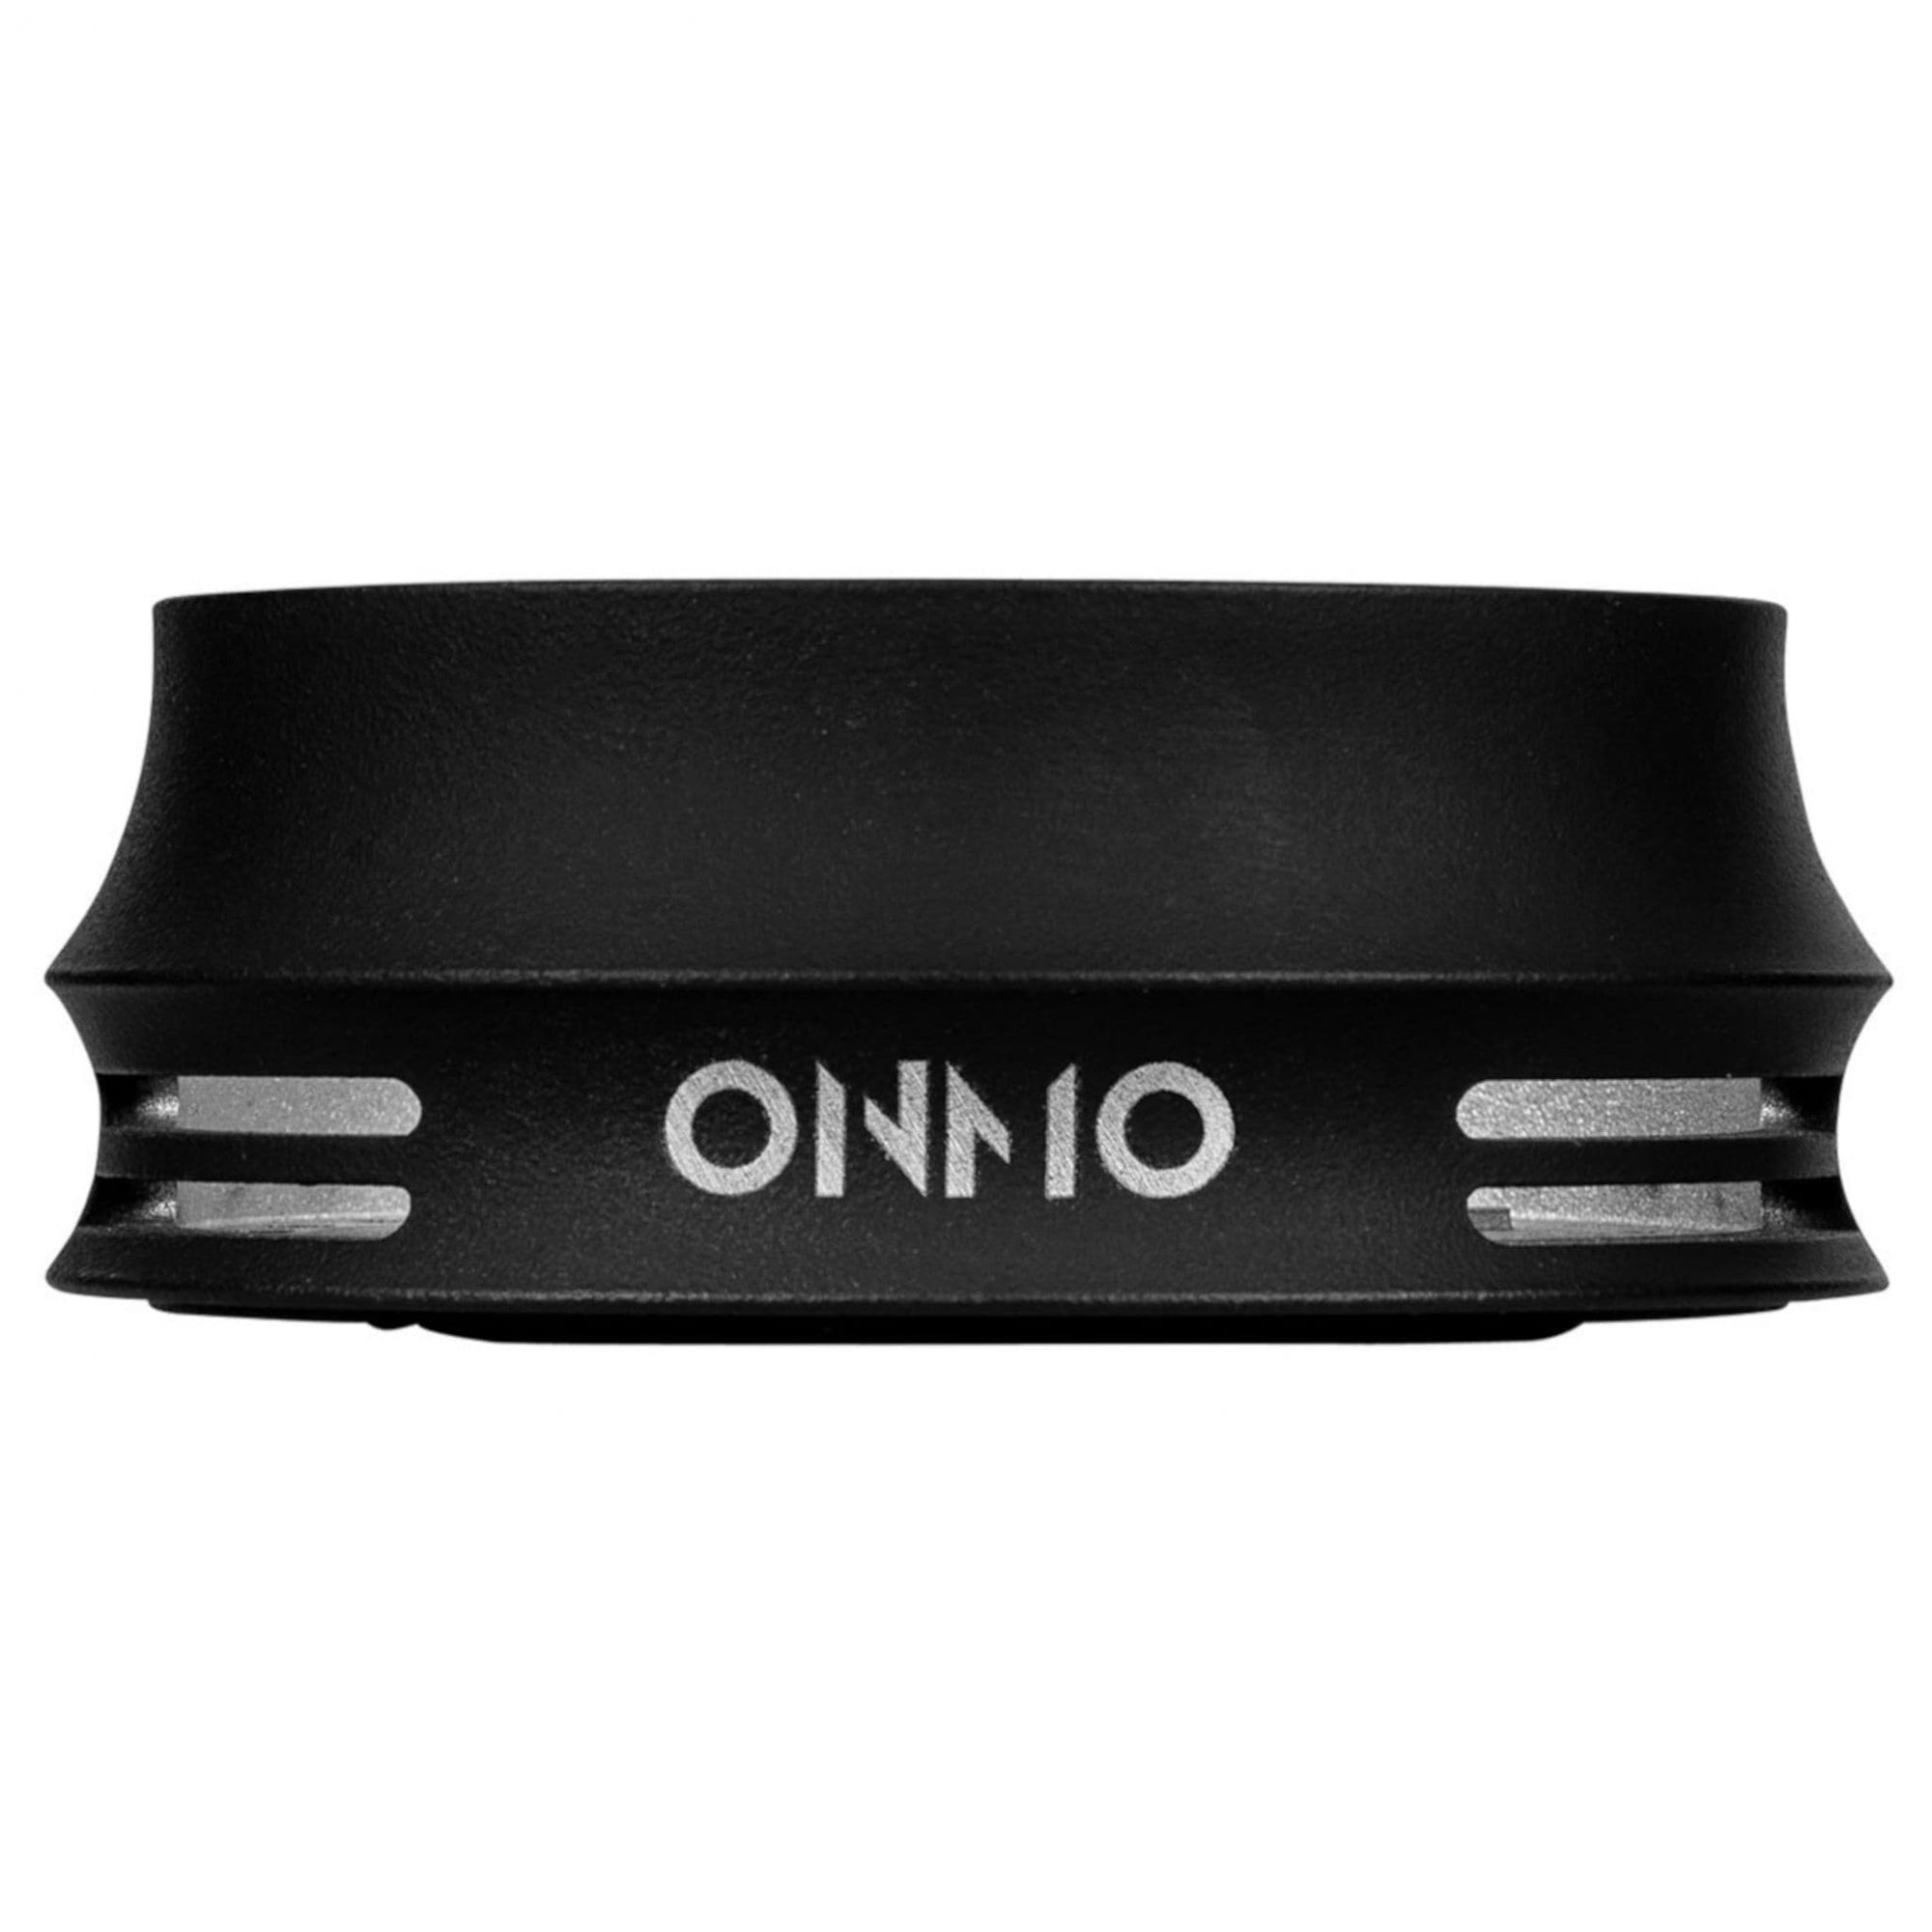 ONMO Heat Management Device Aufsatz - Black